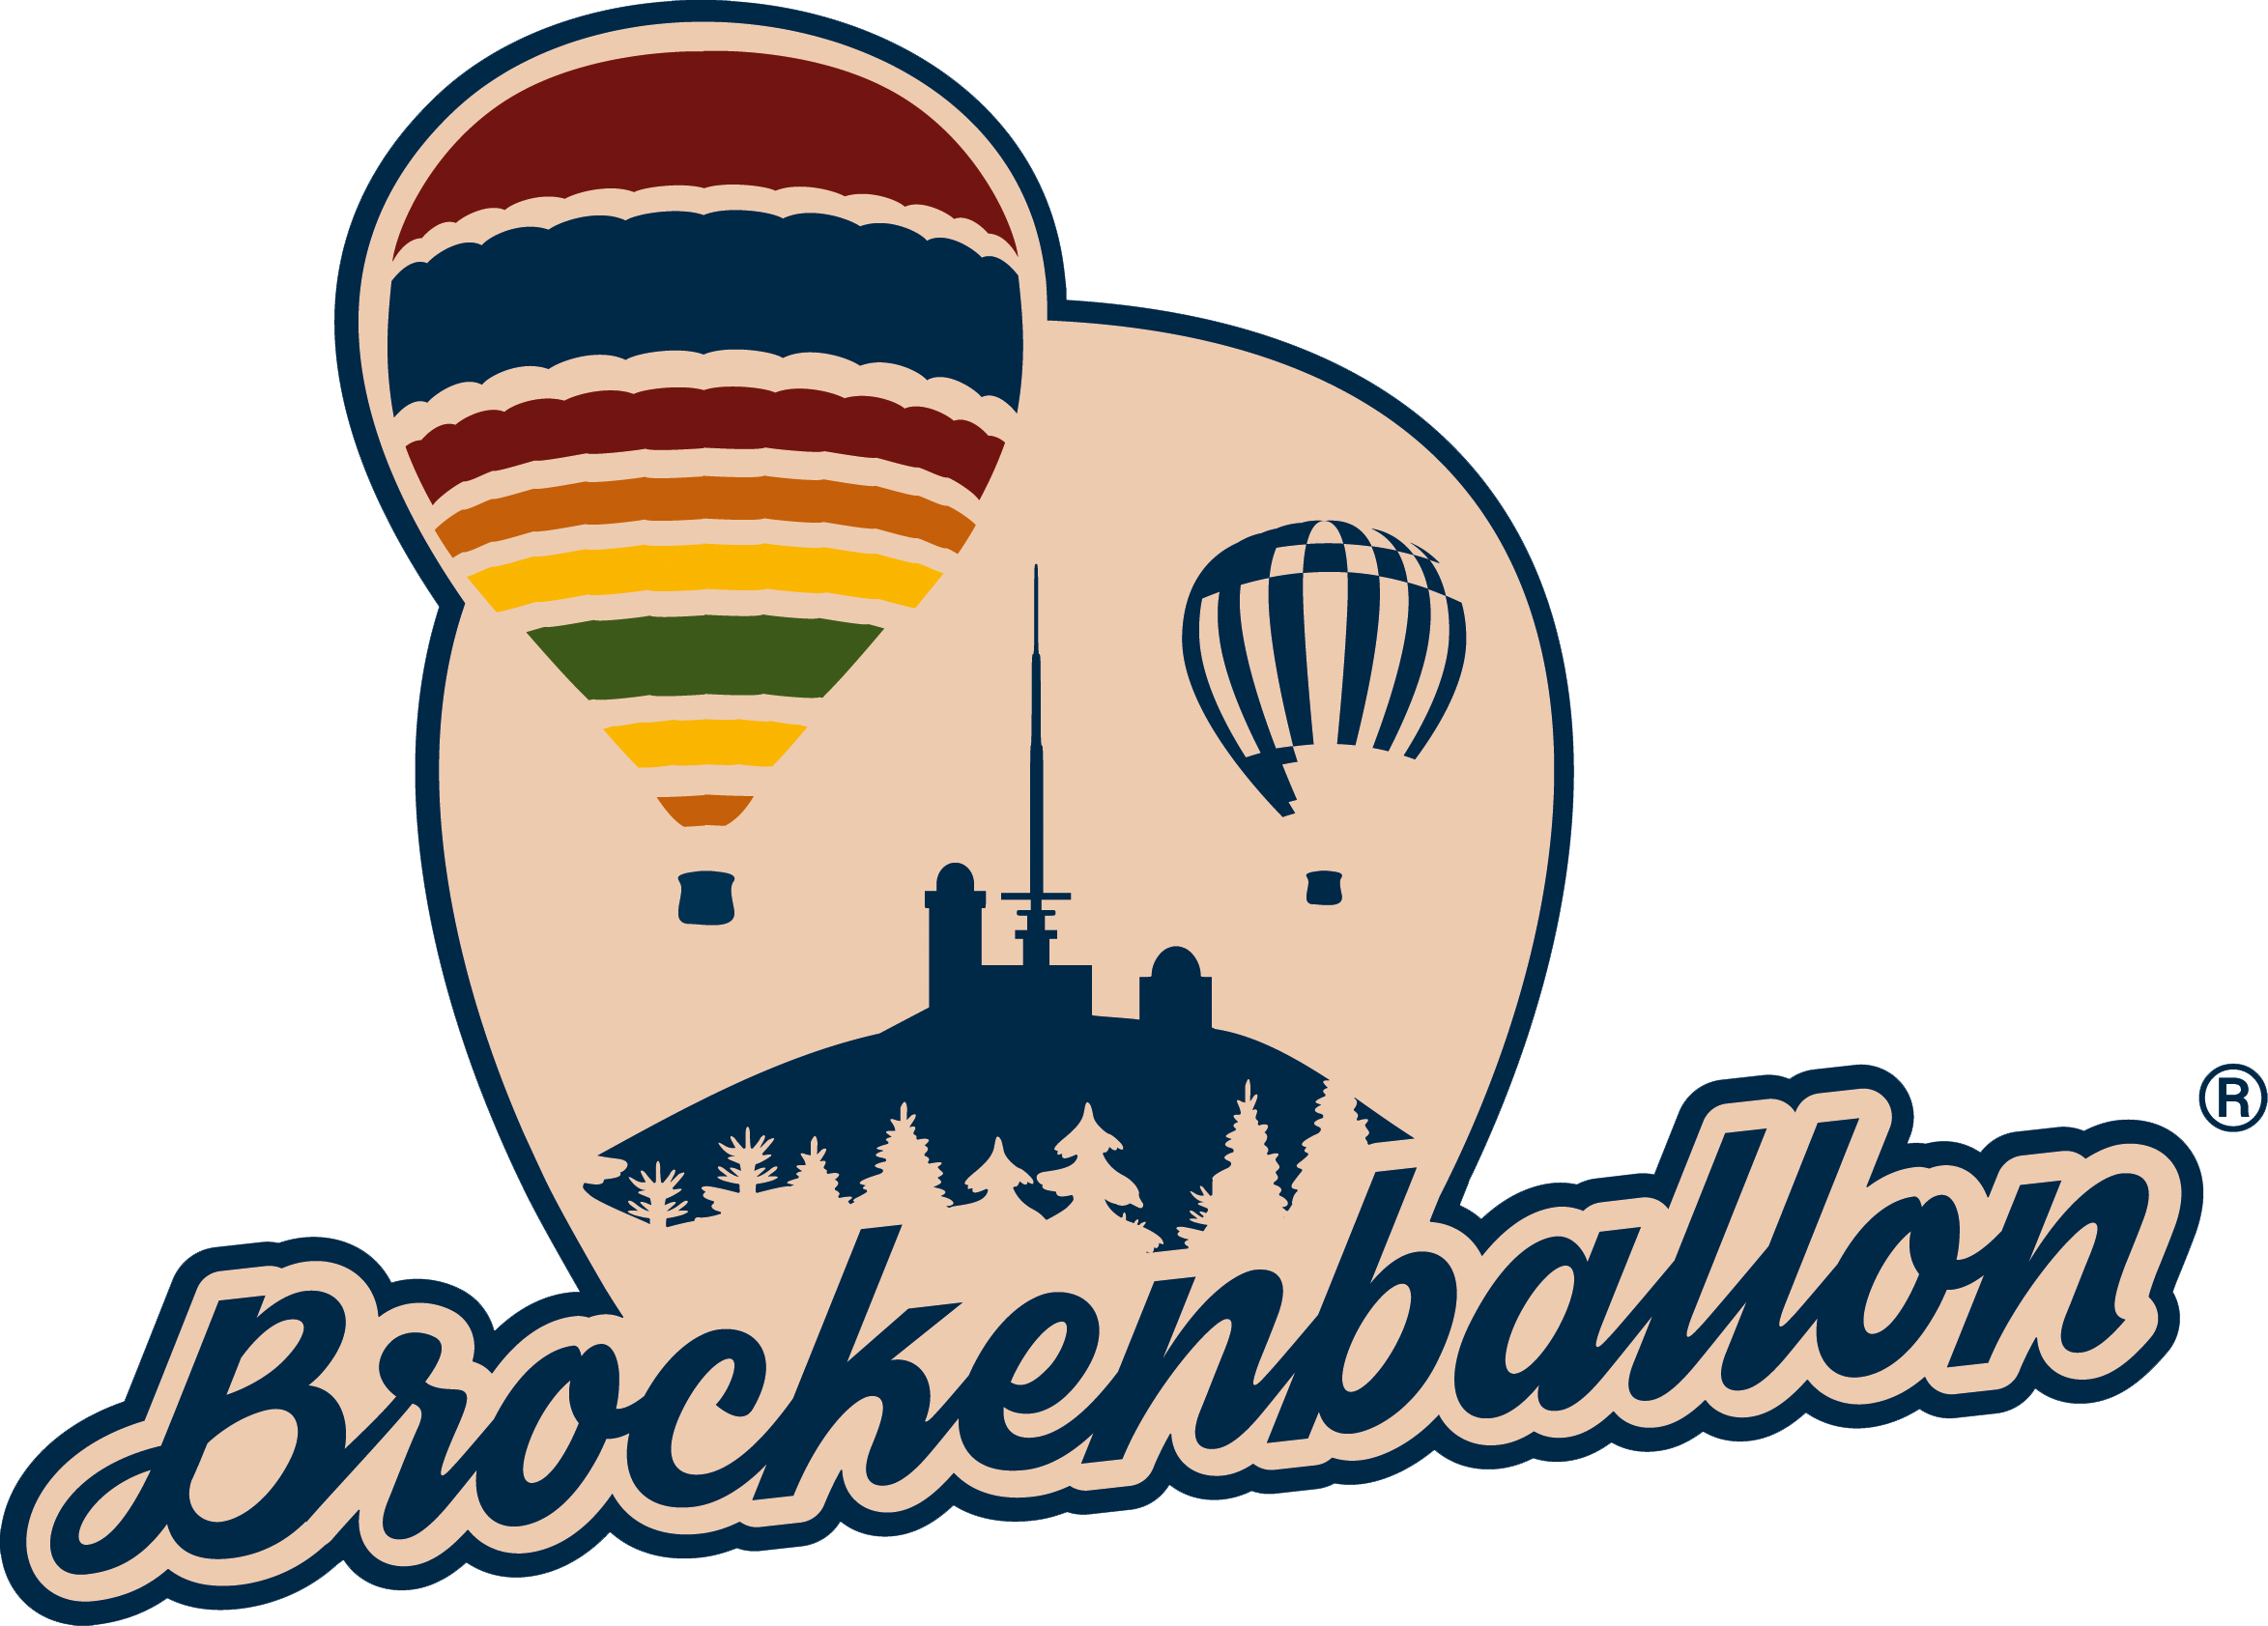 Logo_Brockenballon_4-farbig.png